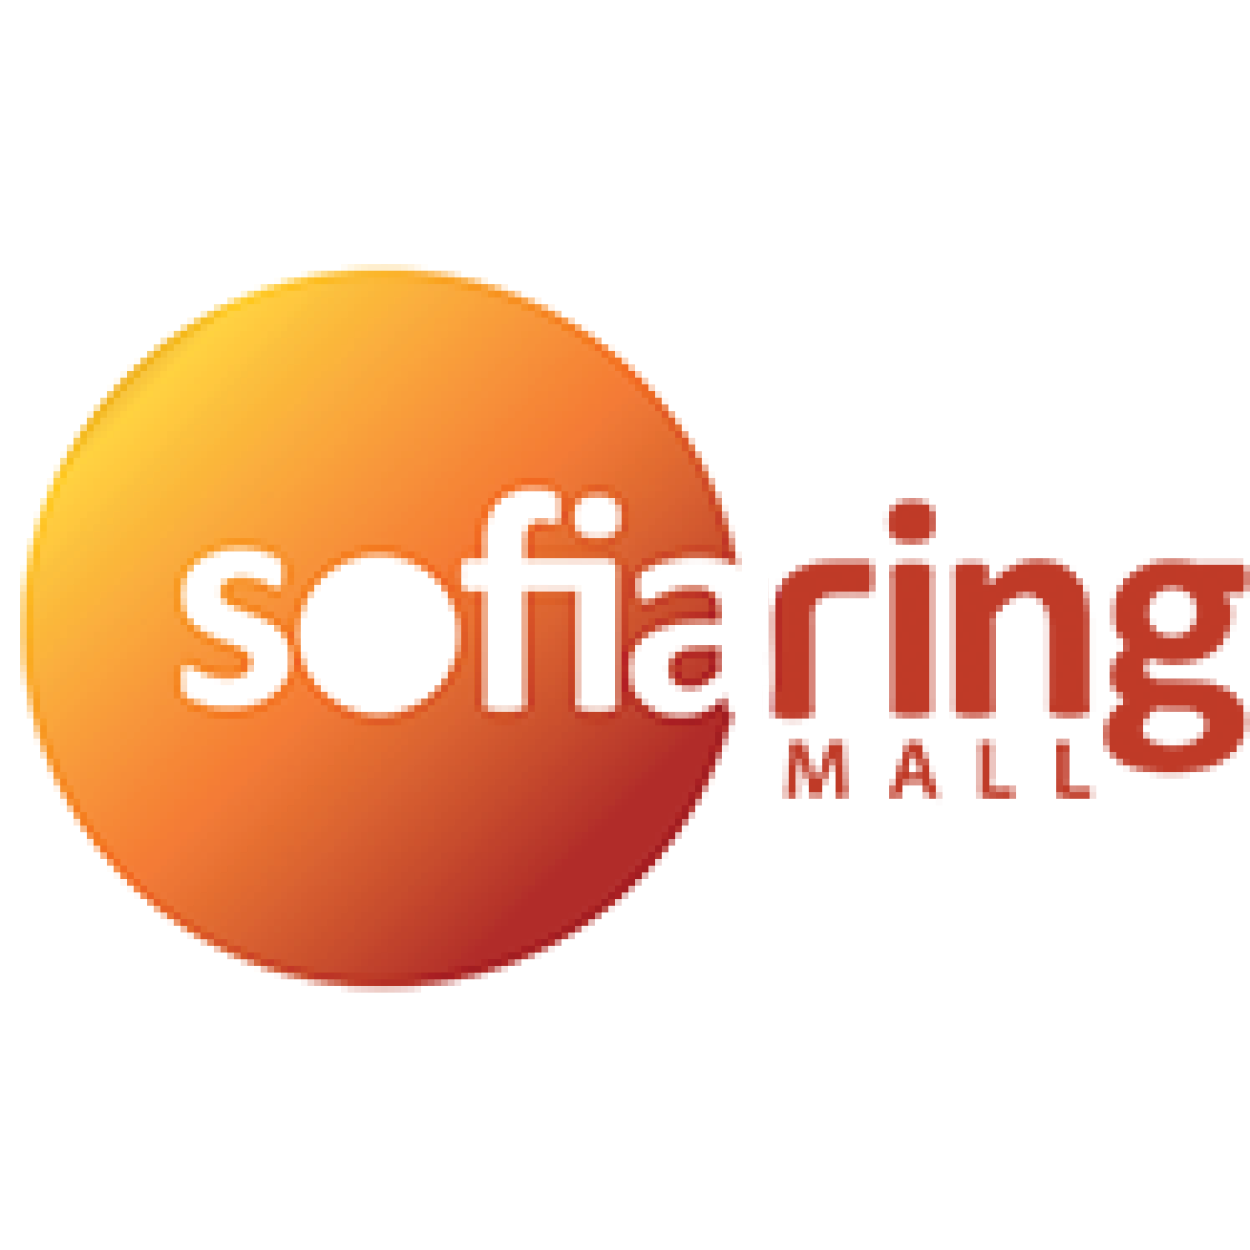 Sofia ring mall